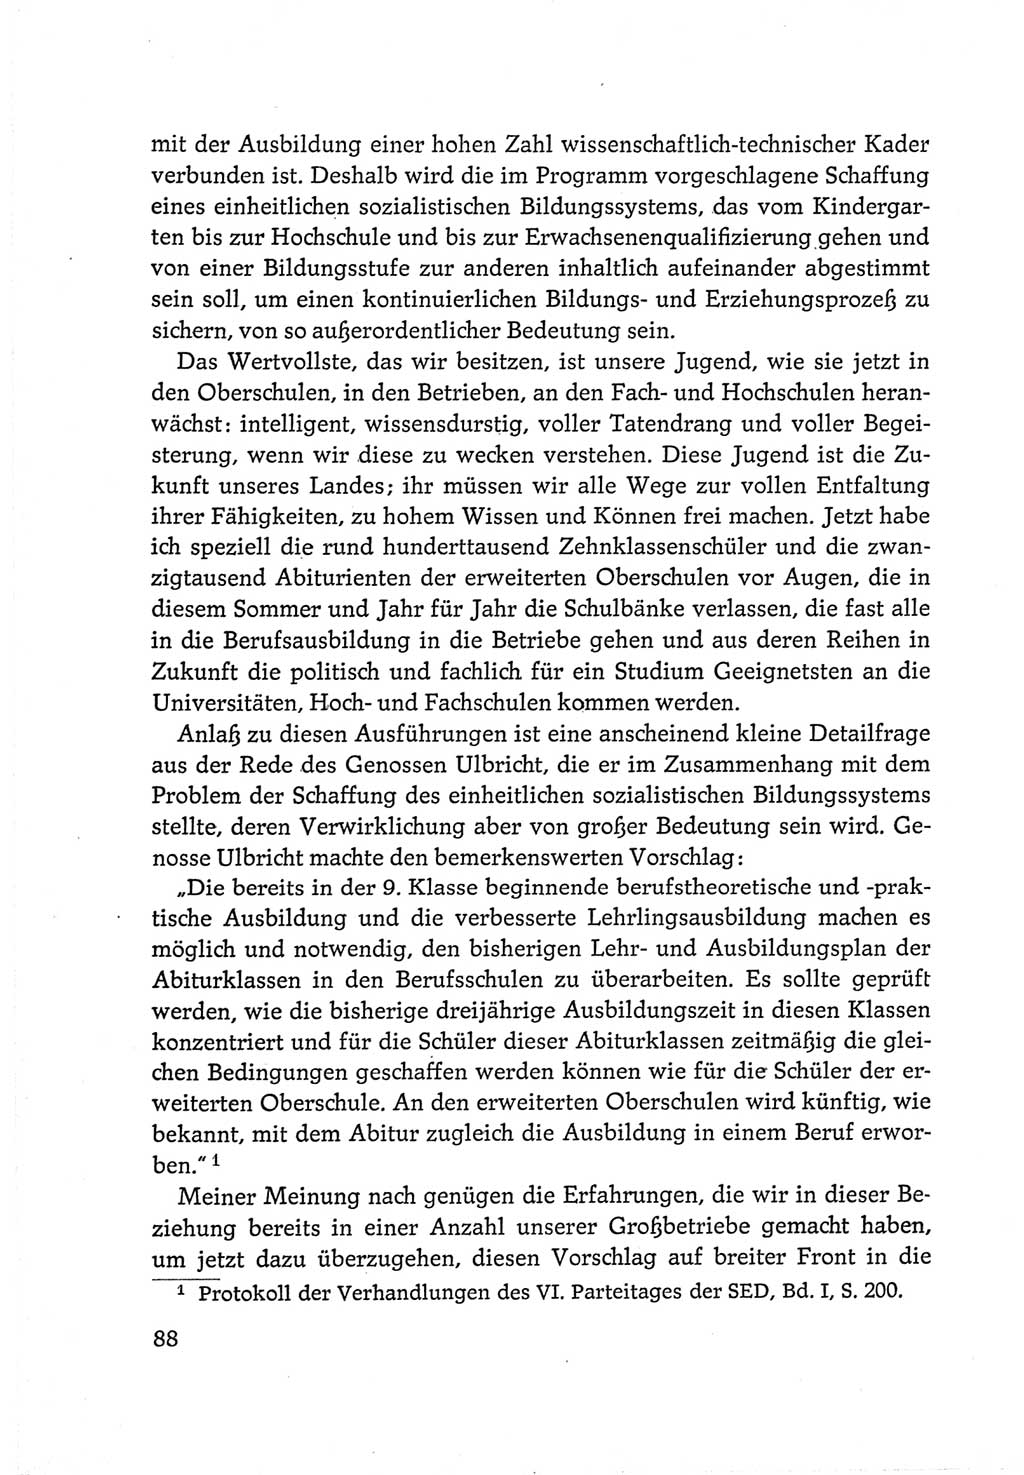 Protokoll der Verhandlungen des Ⅵ. Parteitages der Sozialistischen Einheitspartei Deutschlands (SED) [Deutsche Demokratische Republik (DDR)] 1963, Band Ⅲ, Seite 88 (Prot. Verh. Ⅵ. PT SED DDR 1963, Bd. Ⅲ, S. 88)